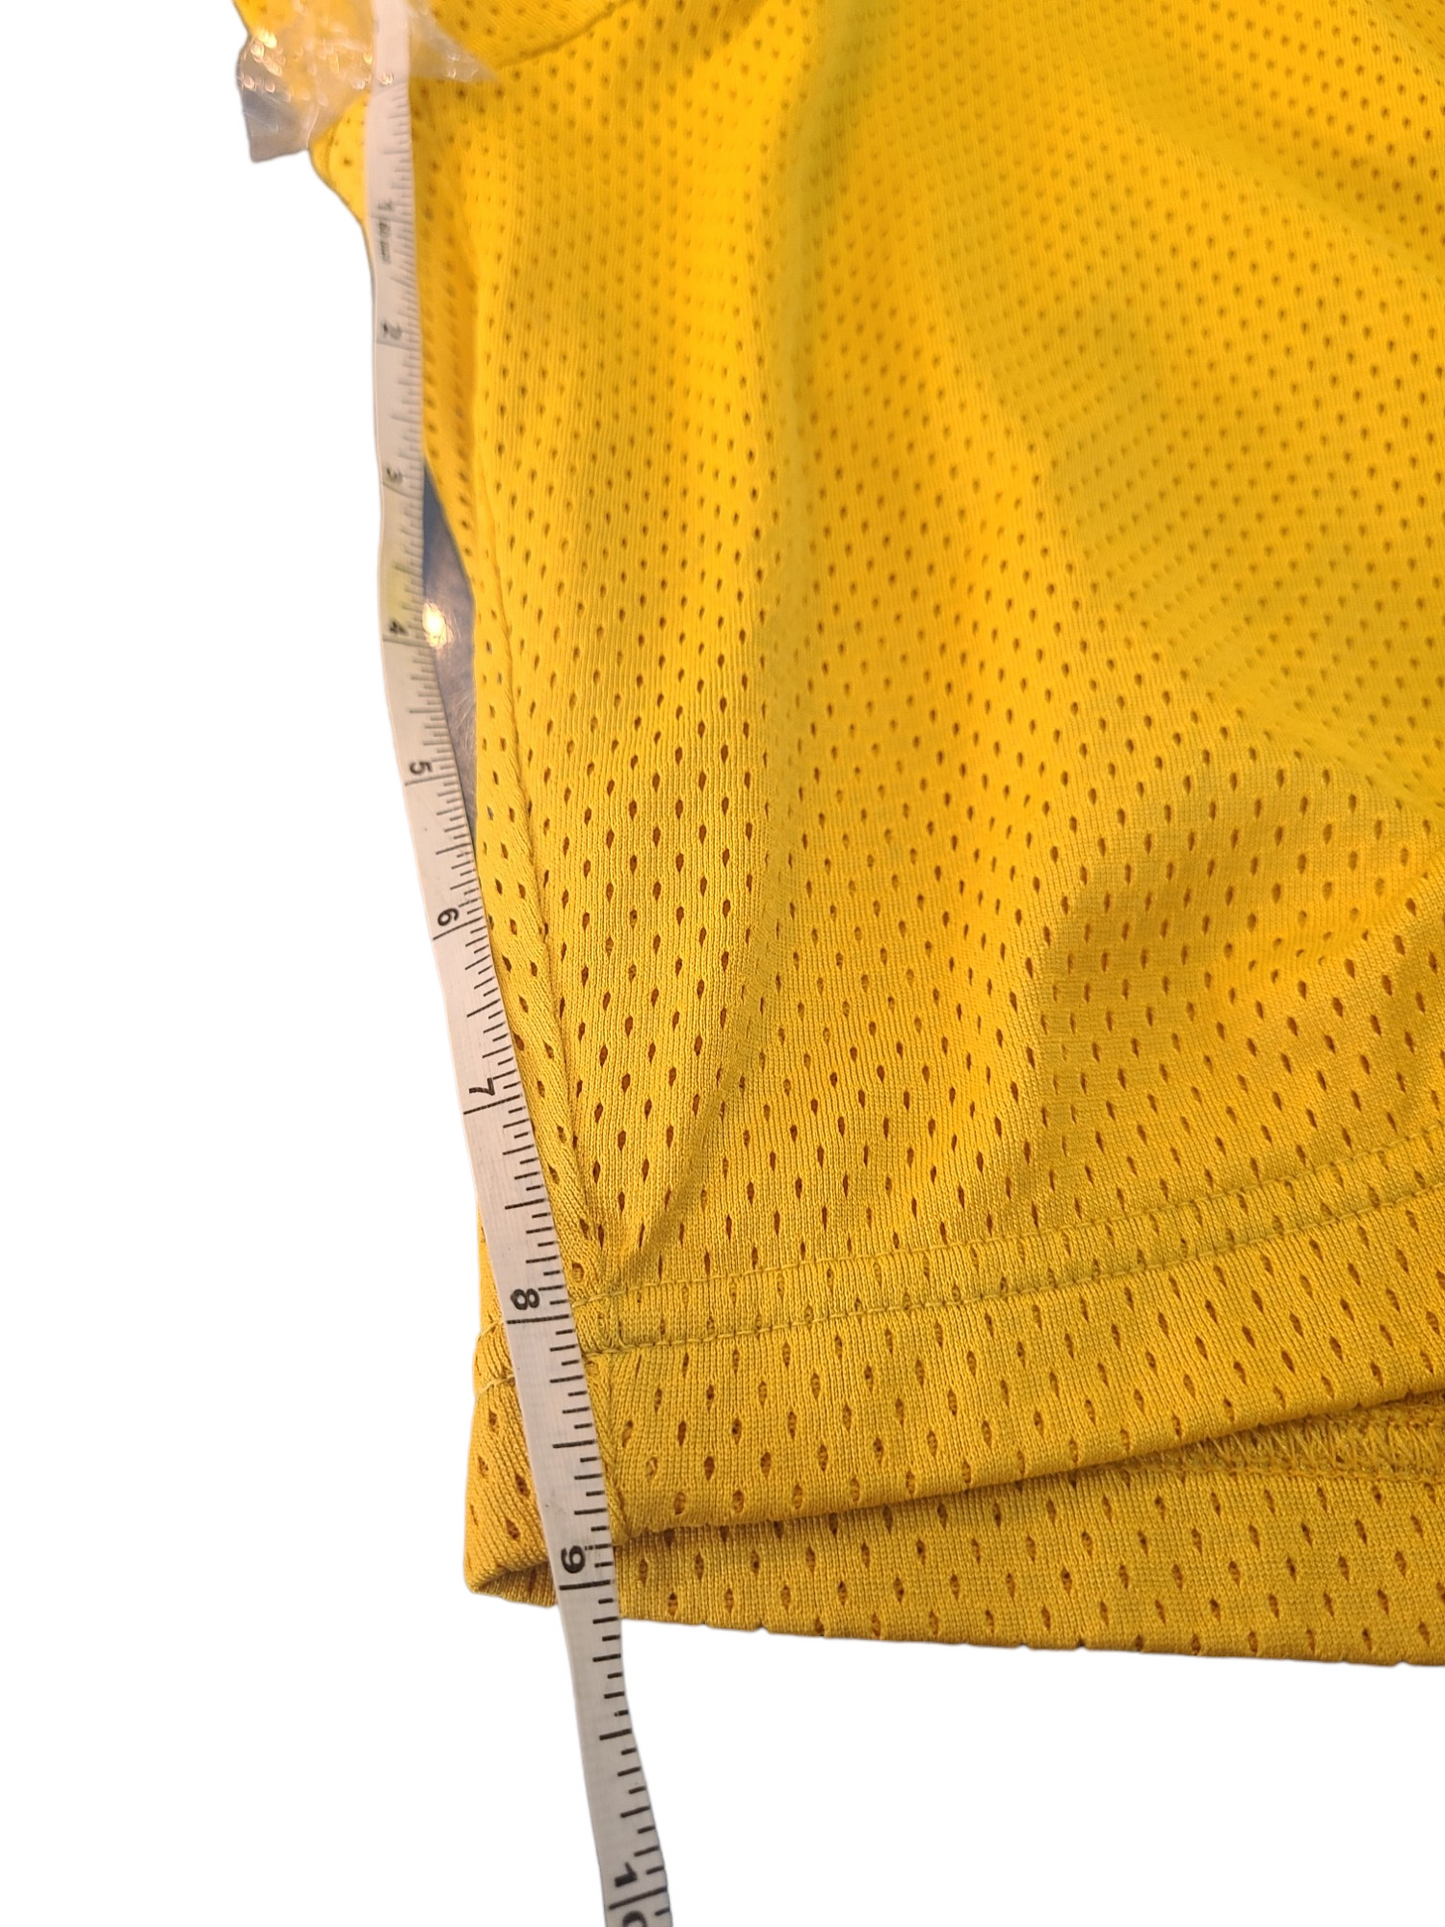 Vintage Nike Dri-Fit Men's Basketball Shorts Yellow - Size XXL